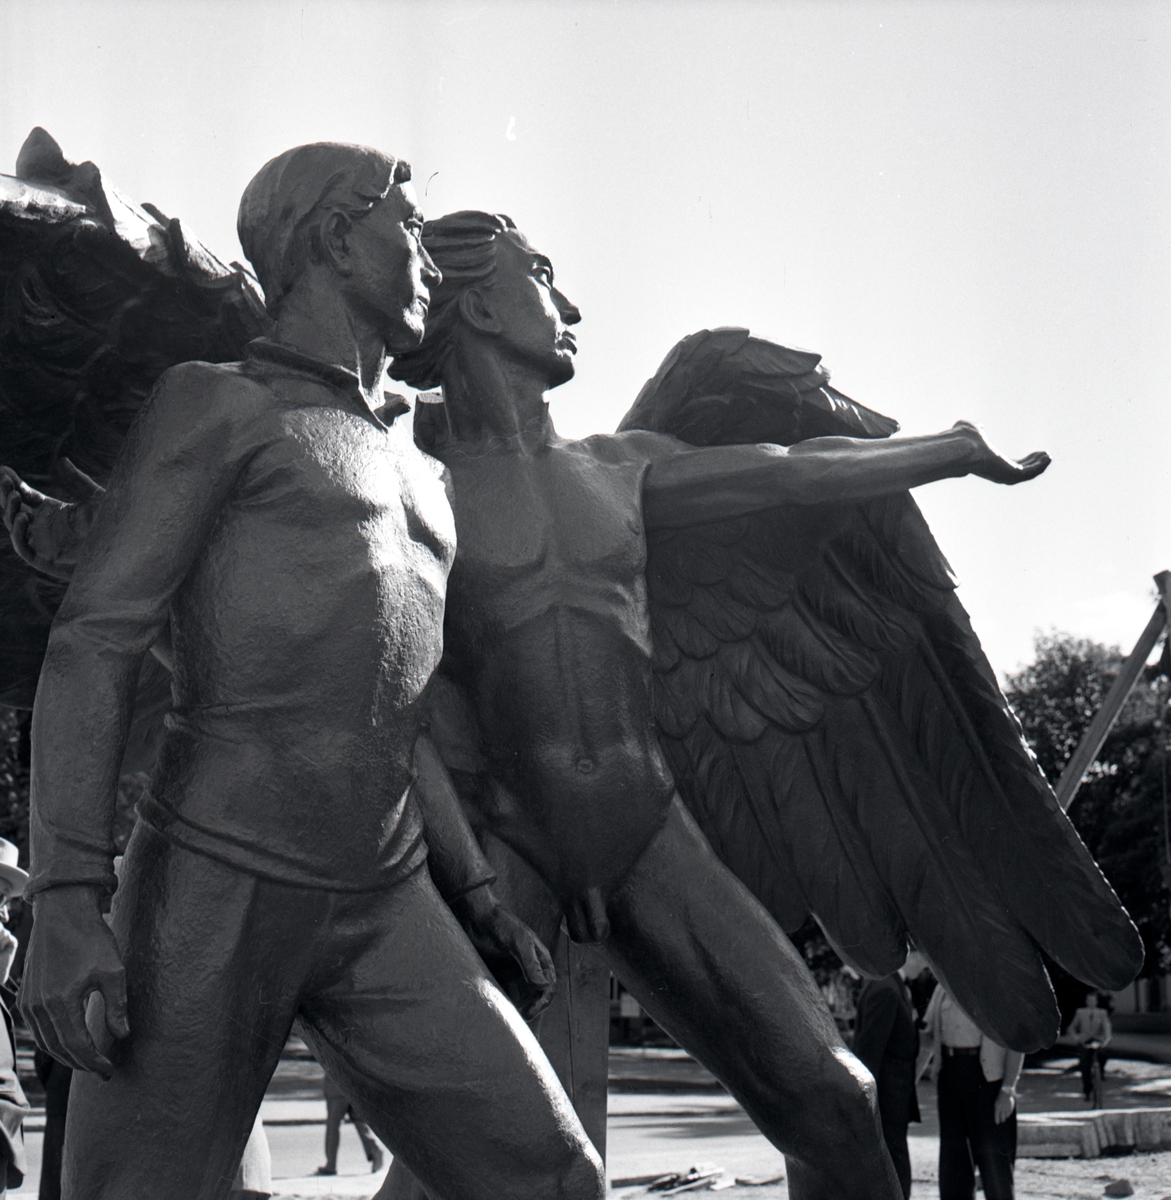 Uppmonteringen av skulpturen Mannen och hans genius i Vasaparken. Skulpturen är gjord av Ivar Johnsson, 1944, i brons och granit.
Skulpturen som var det vinnande tävlingsförslaget till ett monument över Arbetets triumf. Ursprungligen hade skulptören format monumentet, som ett äreminne över Nordenskiölds Vegaexpedition.